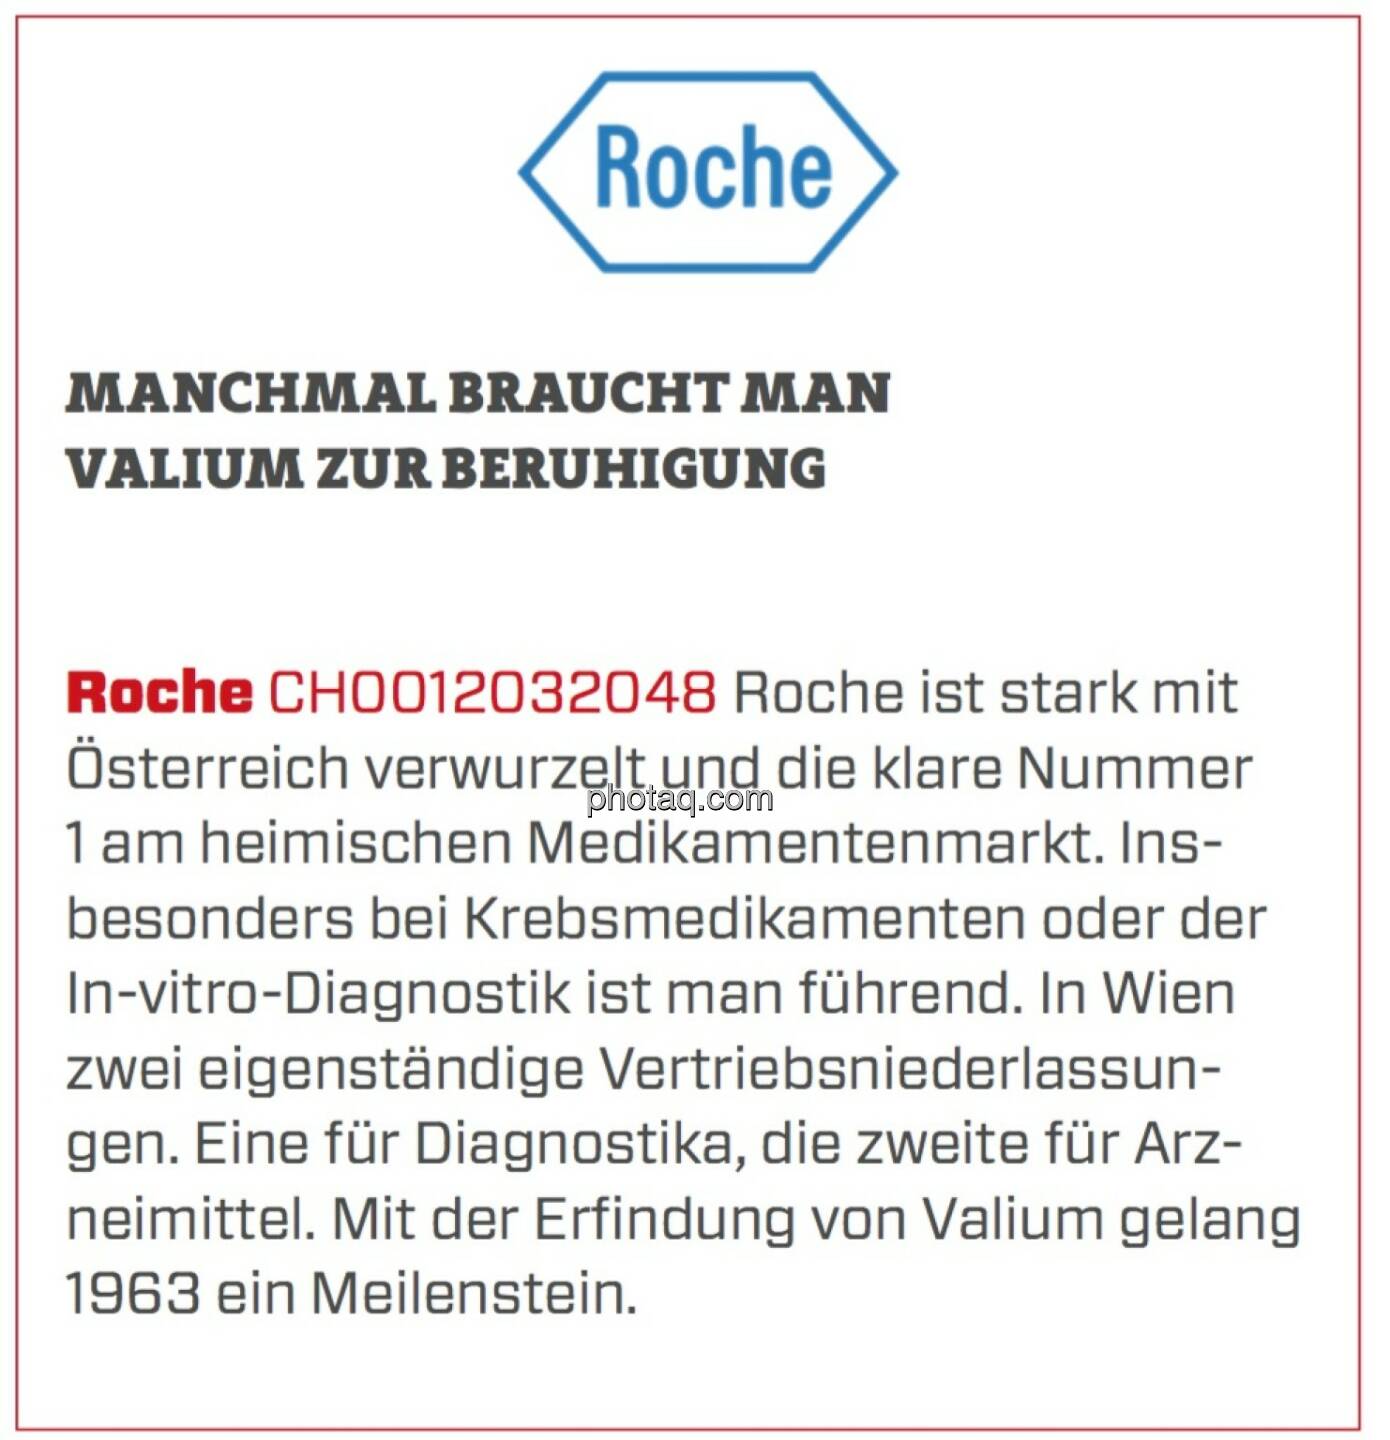 Roche - Manchmal braucht man Valium zur Beruhigung: Roche ist stark mit Österreich verwurzelt und die klare Nummer 1 am heimischen Medikamentenmarkt. Insbesonders bei Krebsmedikamenten oder der In-vitro-Diagnostik ist man führend. In Wien zwei eigenständige Vertriebsniederlassungen. Eine für Diagnostika, die zweite für Arzneimittel. Mit der Erfindung von Valium gelang 1963 ein Meilenstein.